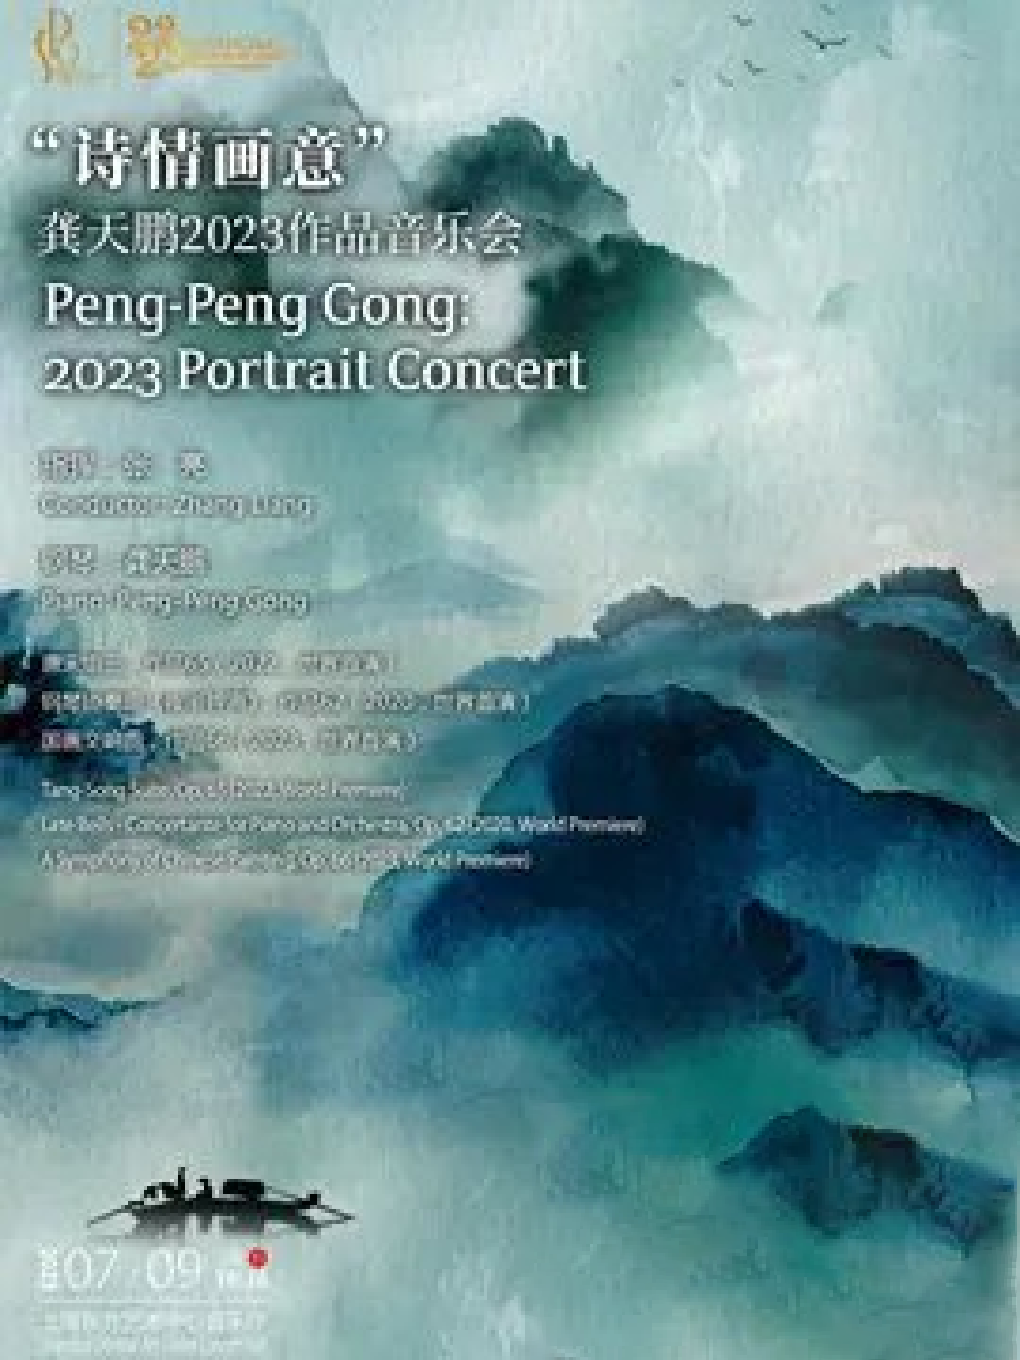 上海爱乐乐团2022～2023年音乐季 “诗情画意”——龚天鹏2023作品音乐会